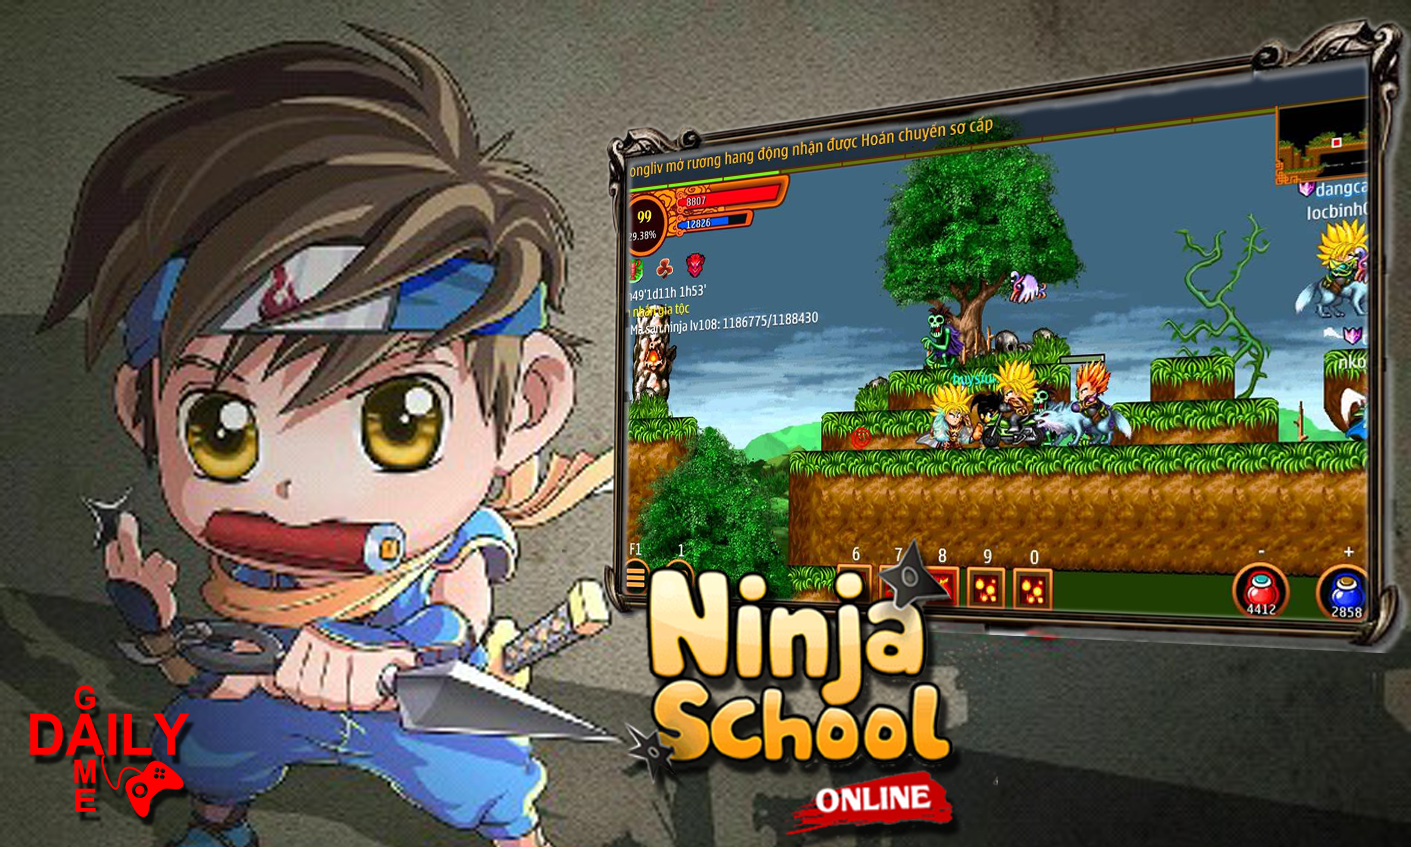 NINJA SCHOOL ONLINE